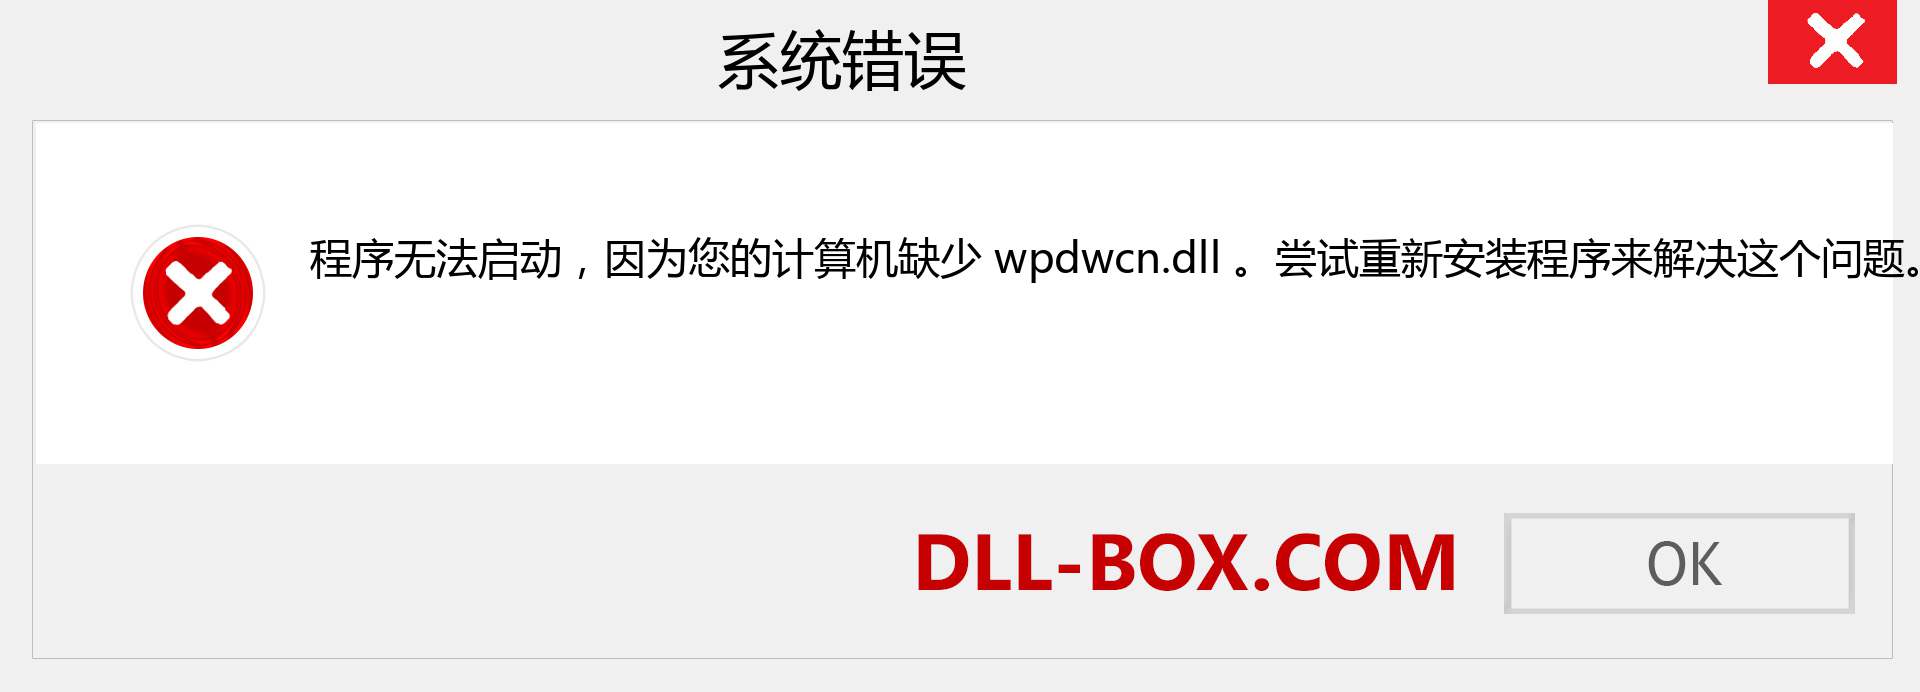 wpdwcn.dll 文件丢失？。 适用于 Windows 7、8、10 的下载 - 修复 Windows、照片、图像上的 wpdwcn dll 丢失错误